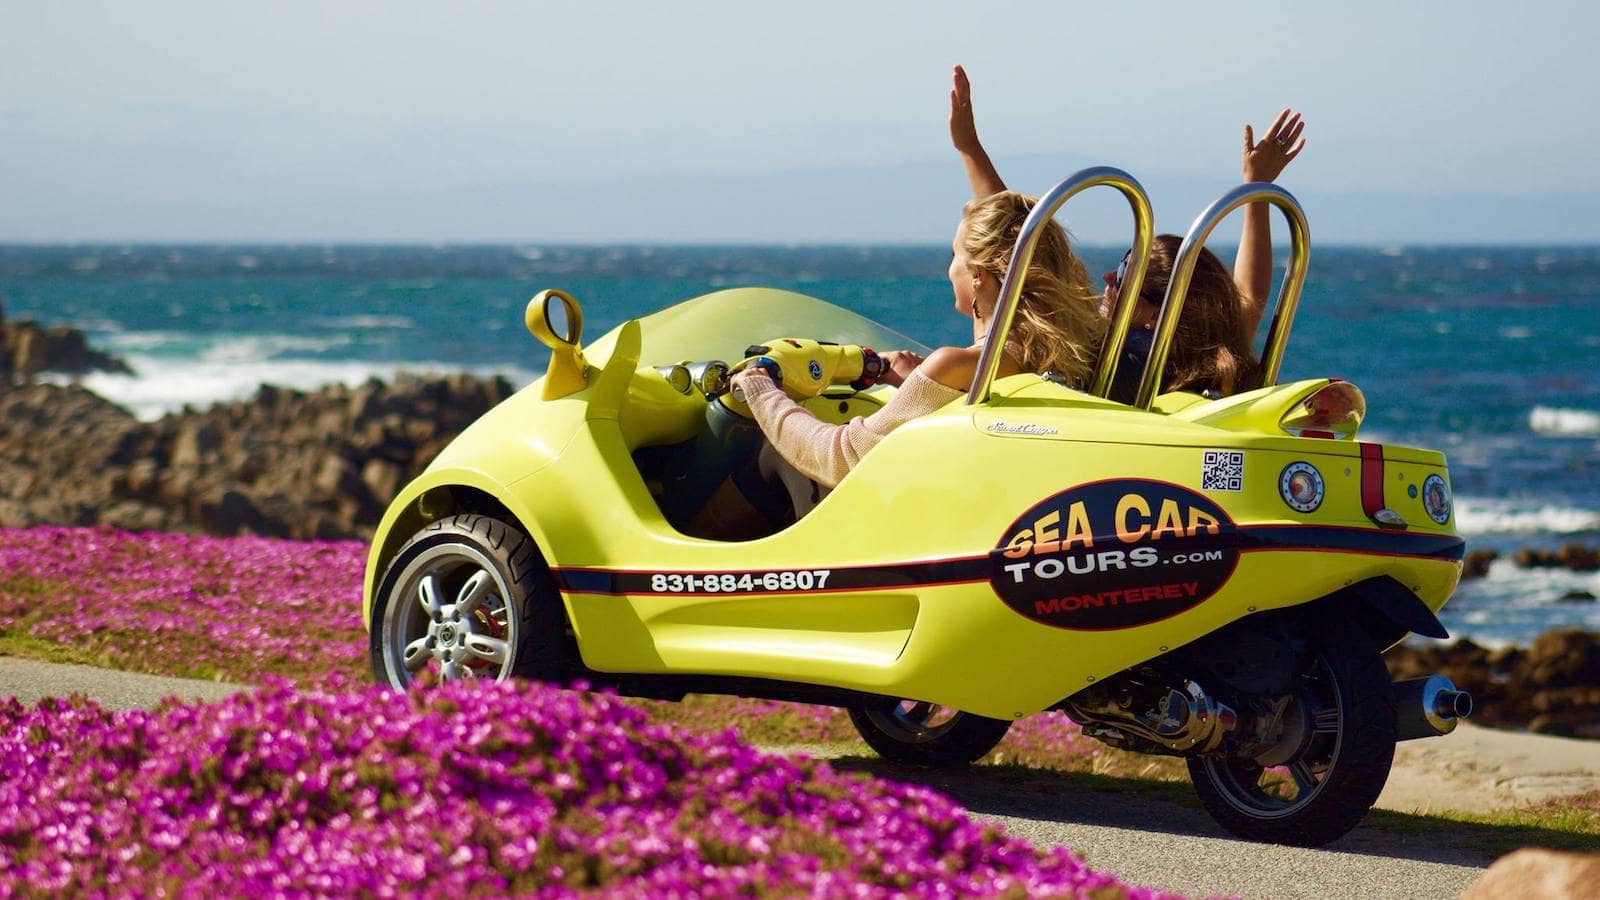 Sea Car Tours LLC-Monterey-Outdoor Activities-credit -seacartours.com-1600x900